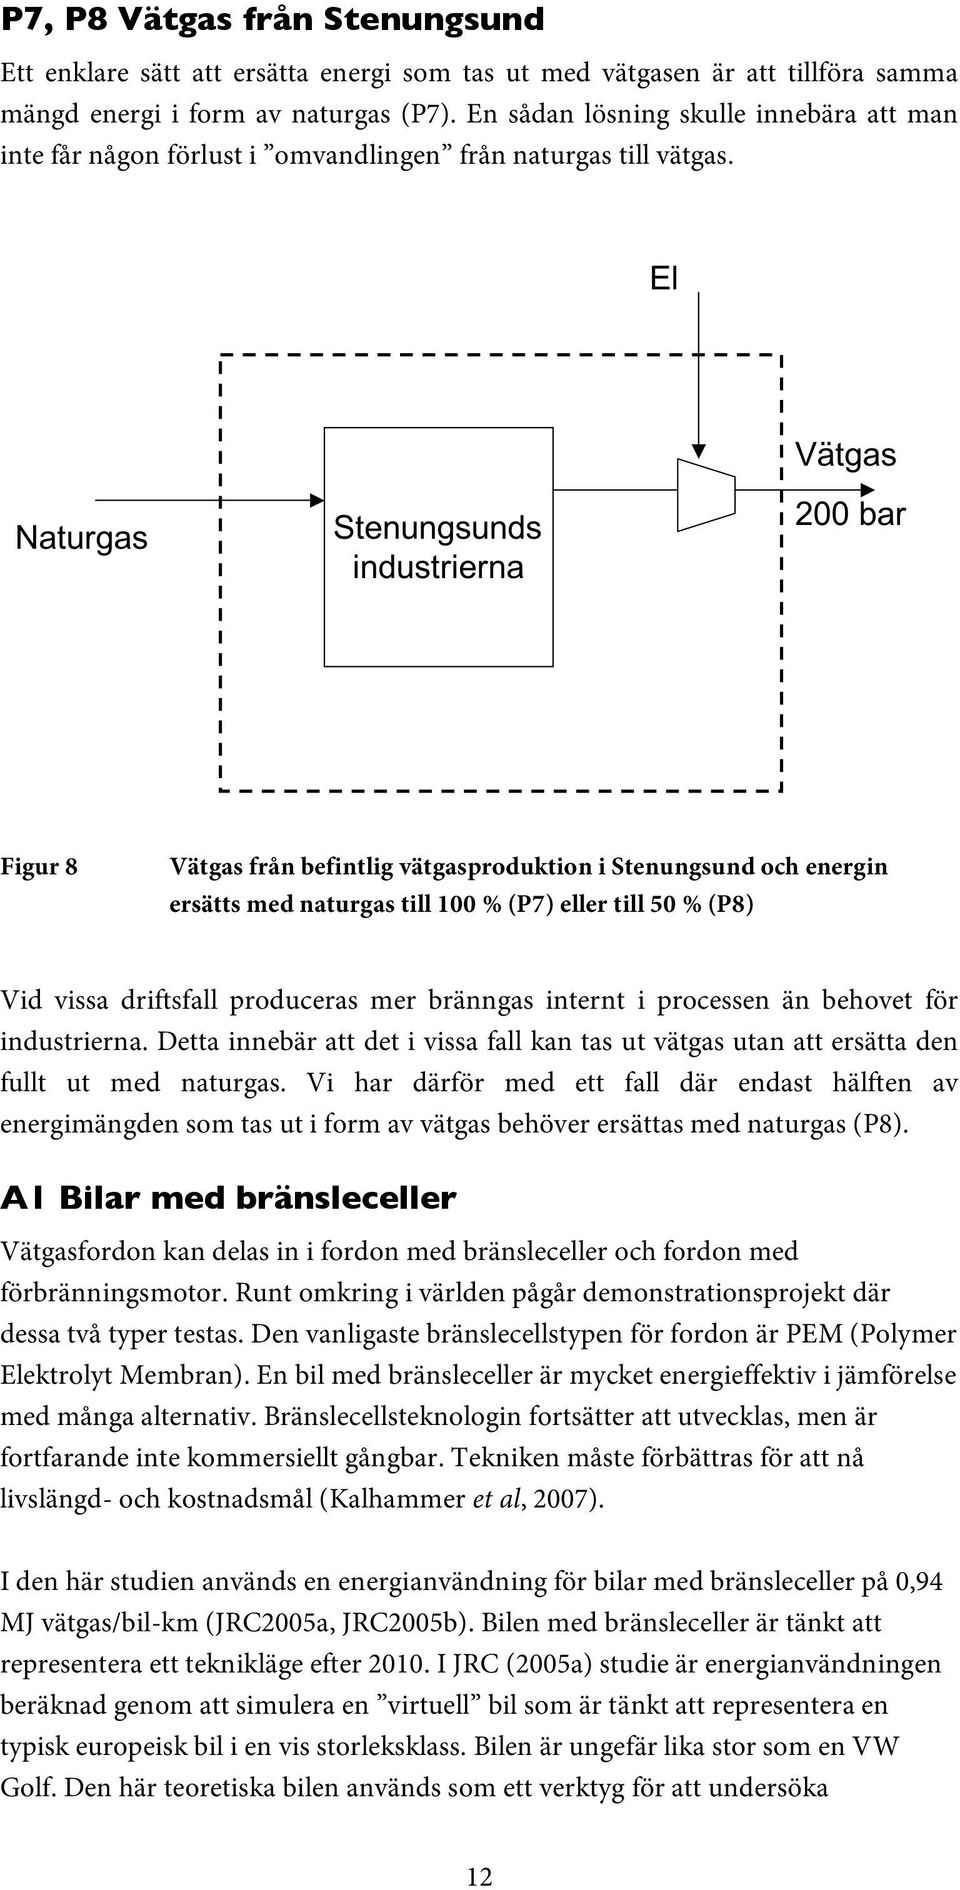 Figur 8 Vätgas från befintlig vätgasproduktion i Stenungsund och energin ersätts med naturgas till 100 % (P7) eller till 50 % (P8) Vid vissa driftsfall produceras mer bränngas internt i processen än